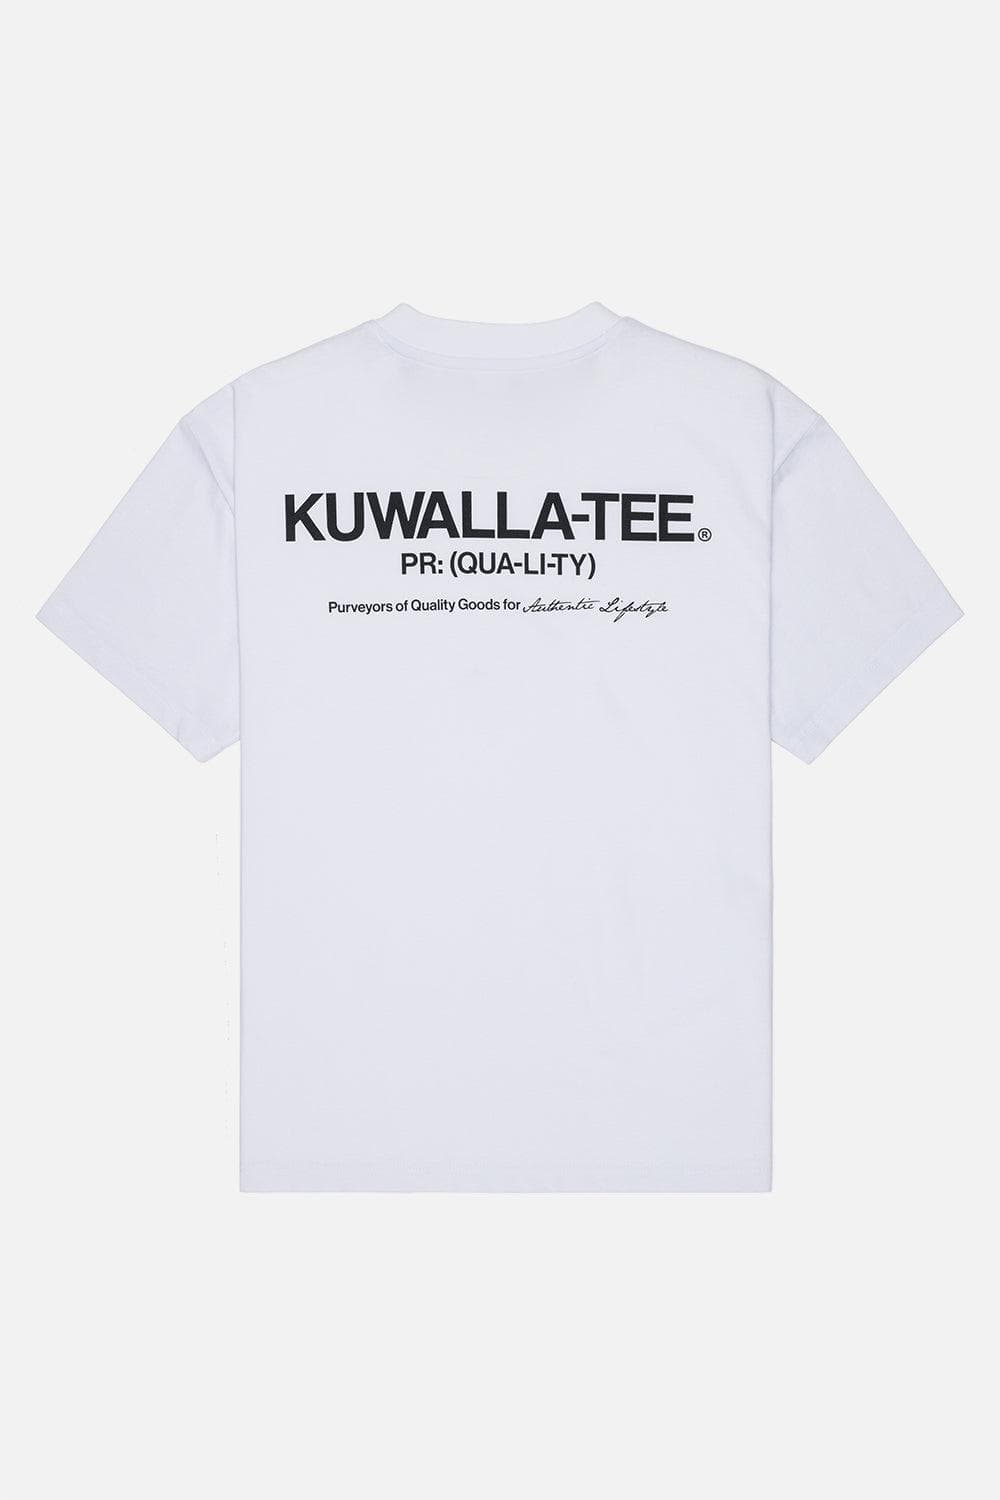 KUWALLATEE (@KUWALLATEE) / X